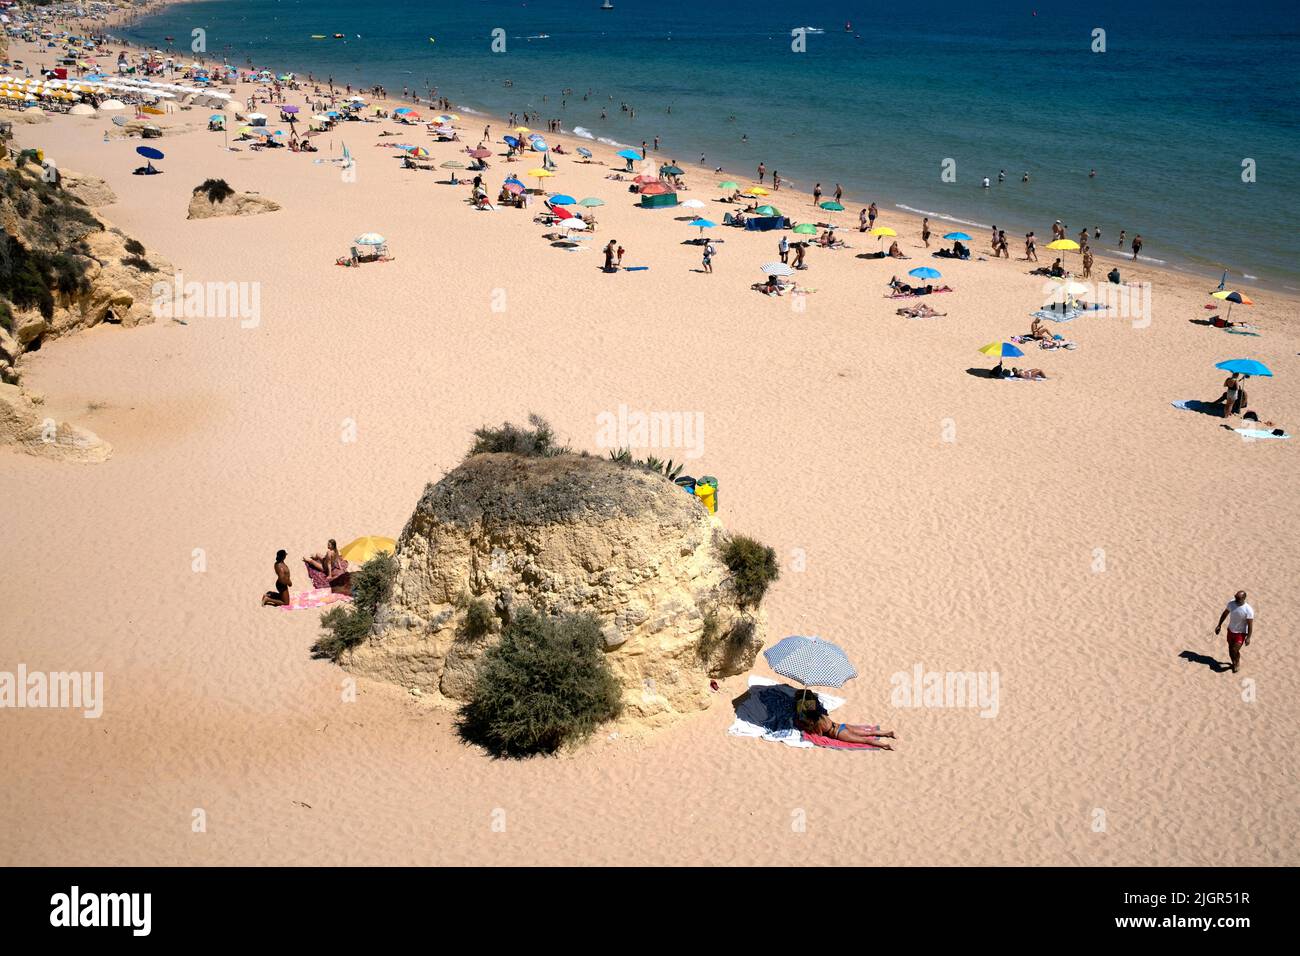 Personnes sur la plage de sable blanc dans la région de Porches, district de Lagoa, Algarve, Portugal Banque D'Images